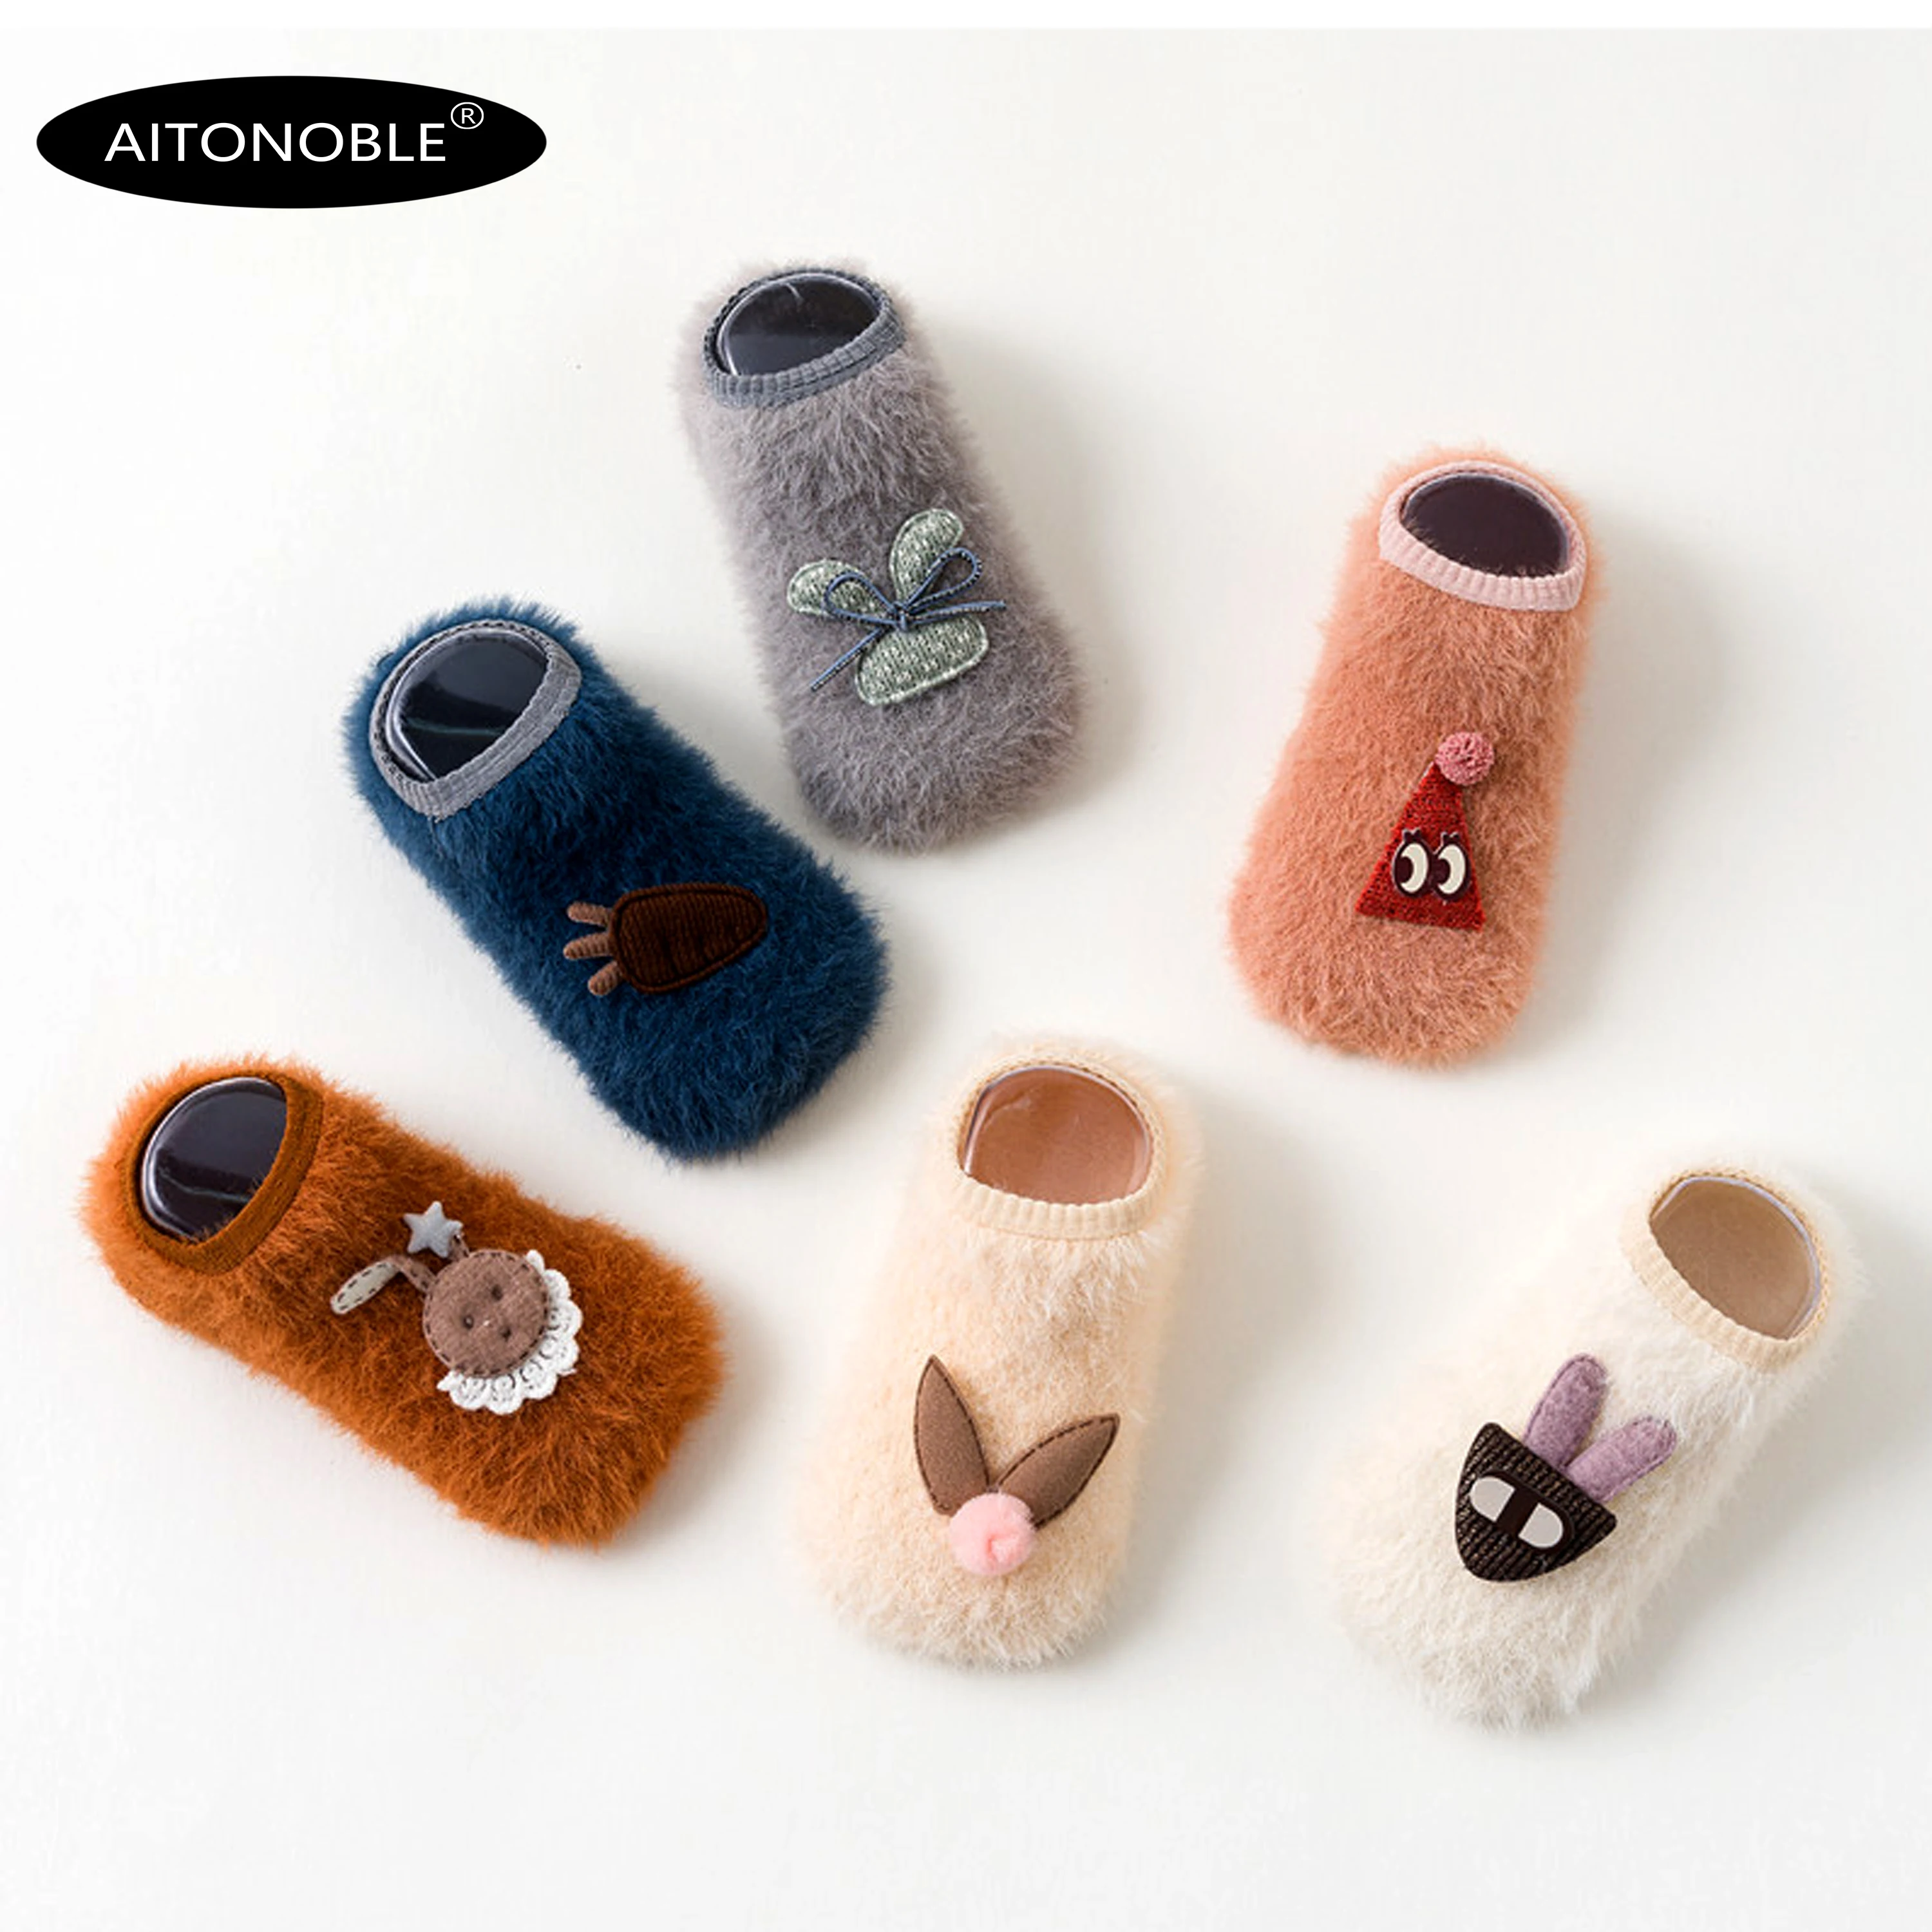 Aitonoble/6 пар носков для малышей с полдюжины От 0 до 3 лет Simier нескользящие носки для дома нескользящие носки для младенцев, одежда, аксессуары